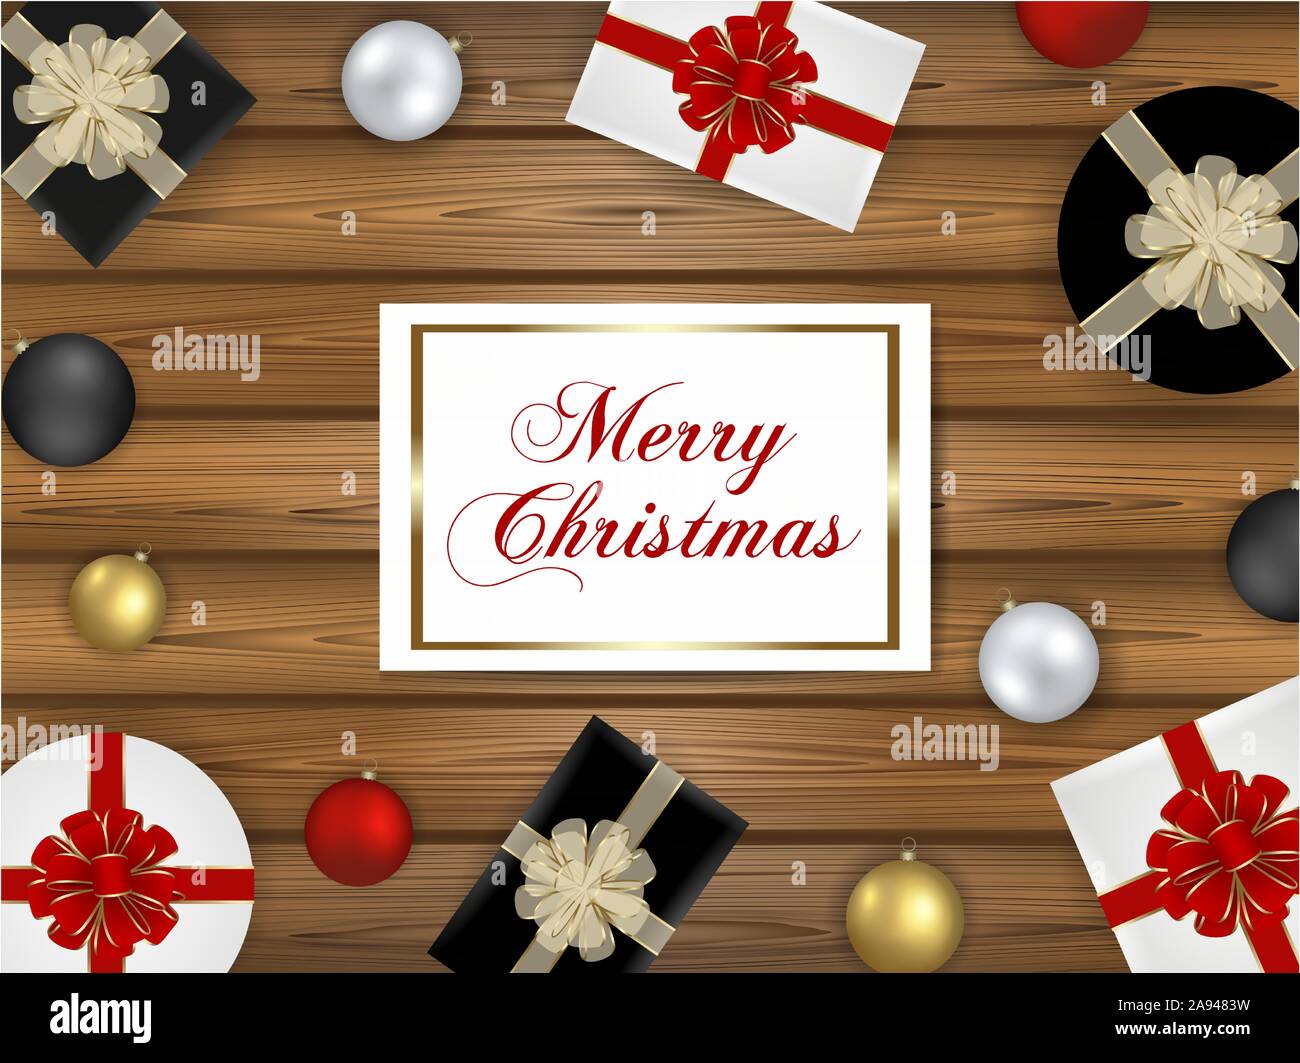 Weihnachten Abbildung mit Holz- Hintergrund, Geschenkboxen, Weihnachtskugeln und Grußkarte Stock Vektor